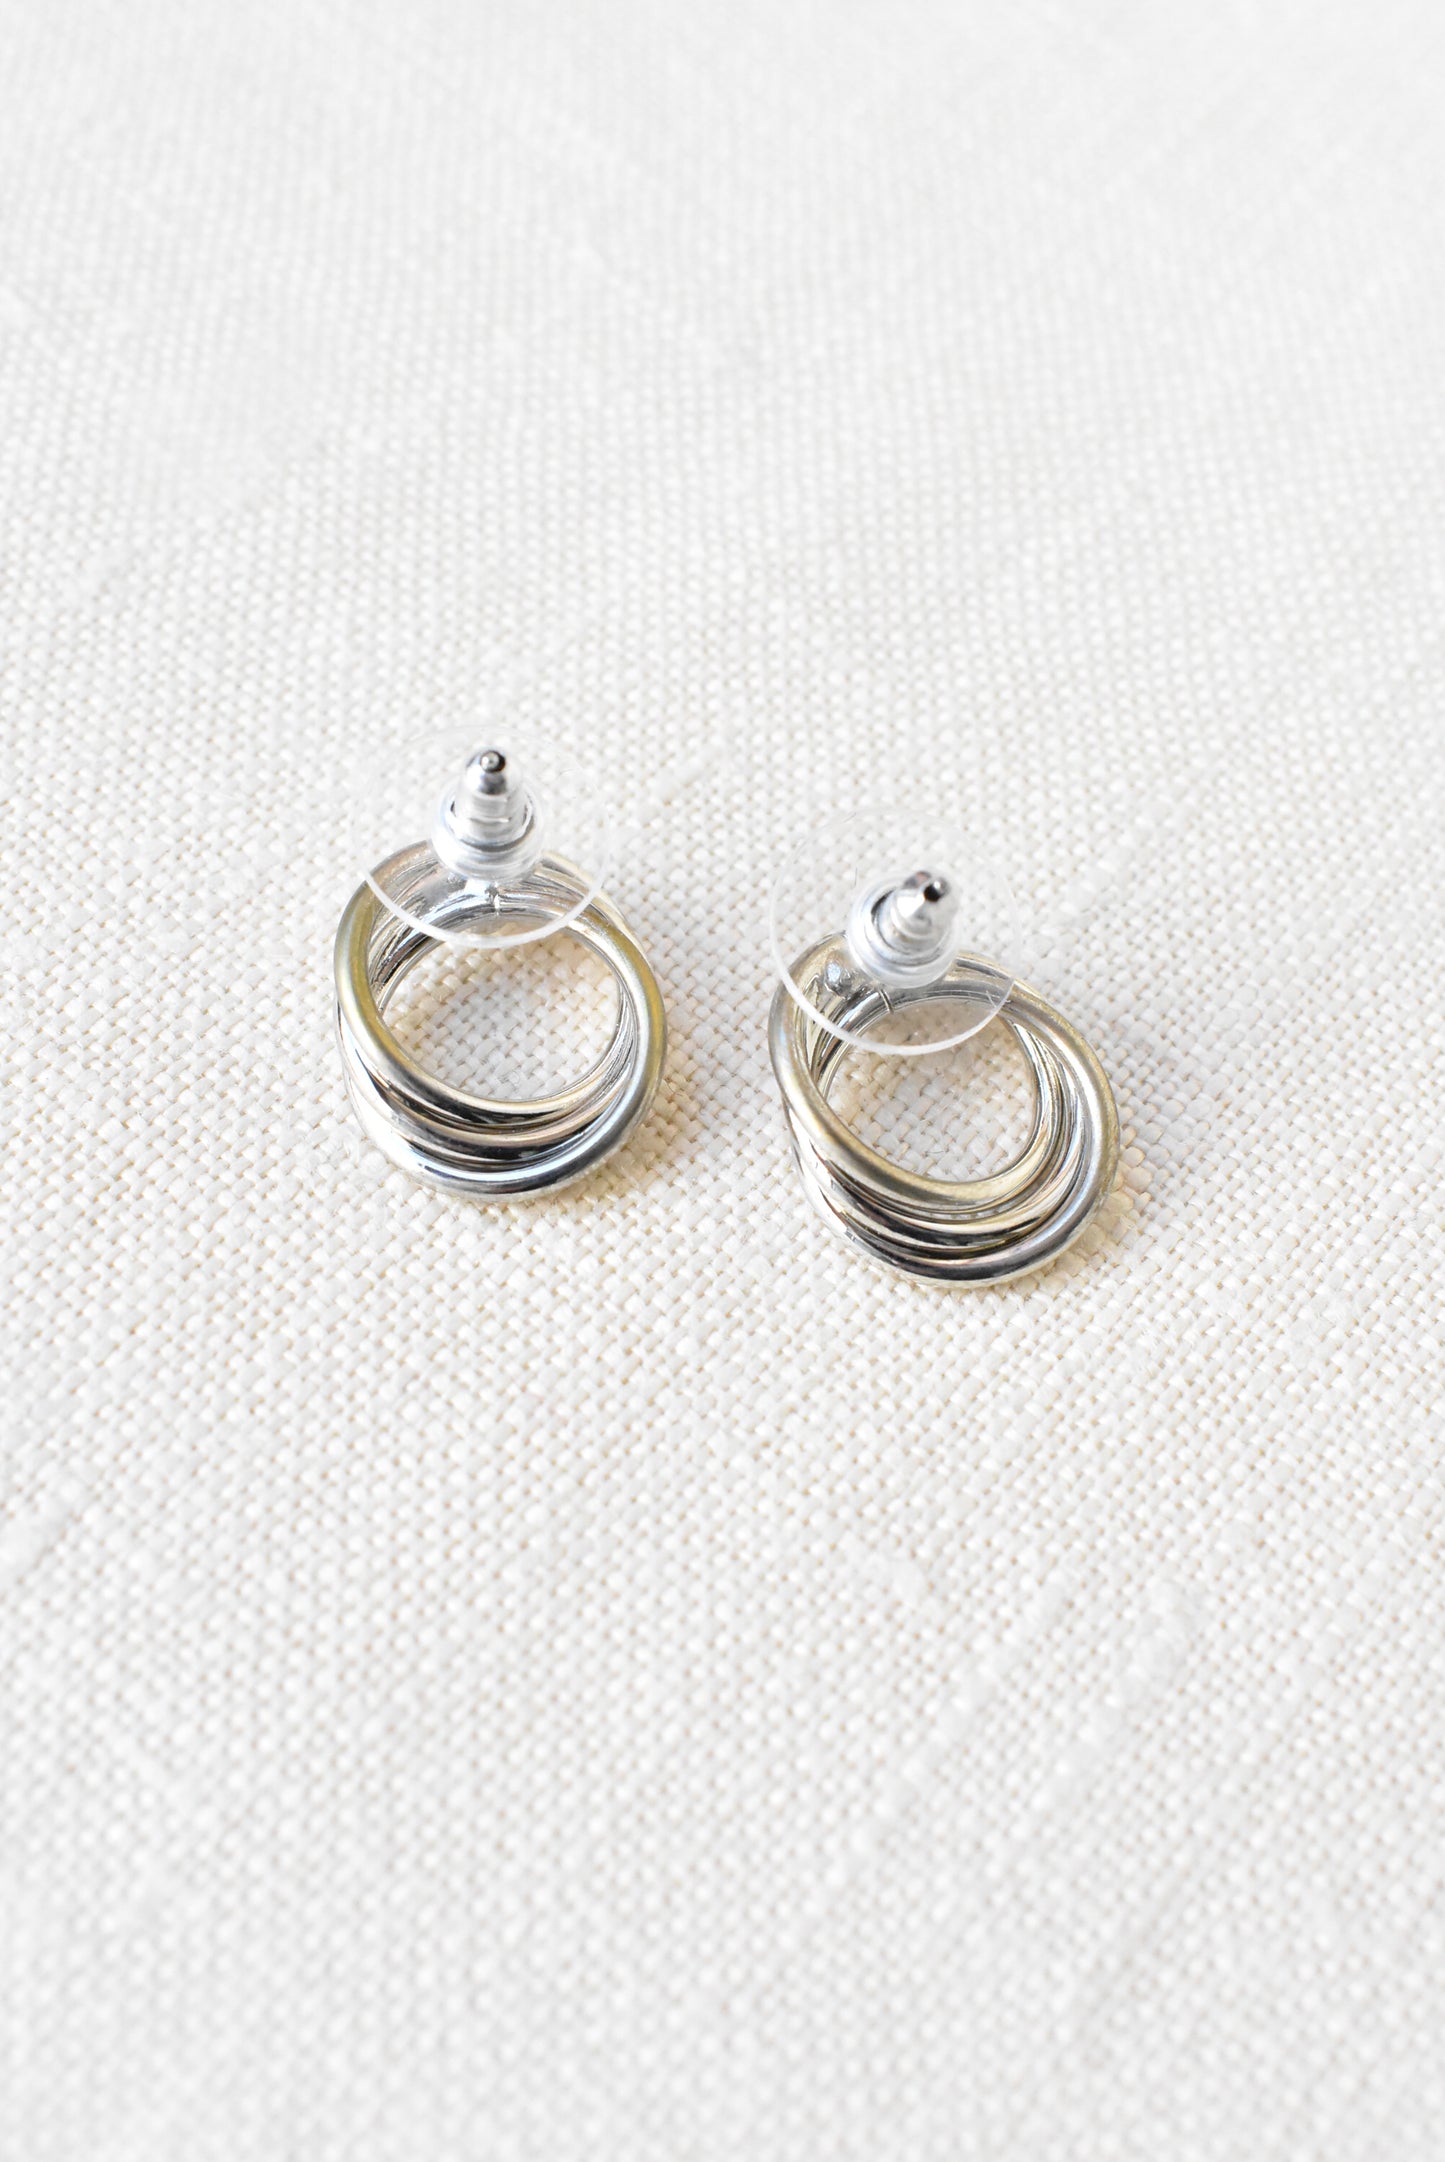 Buckingham silver diamanté earrings, NEW